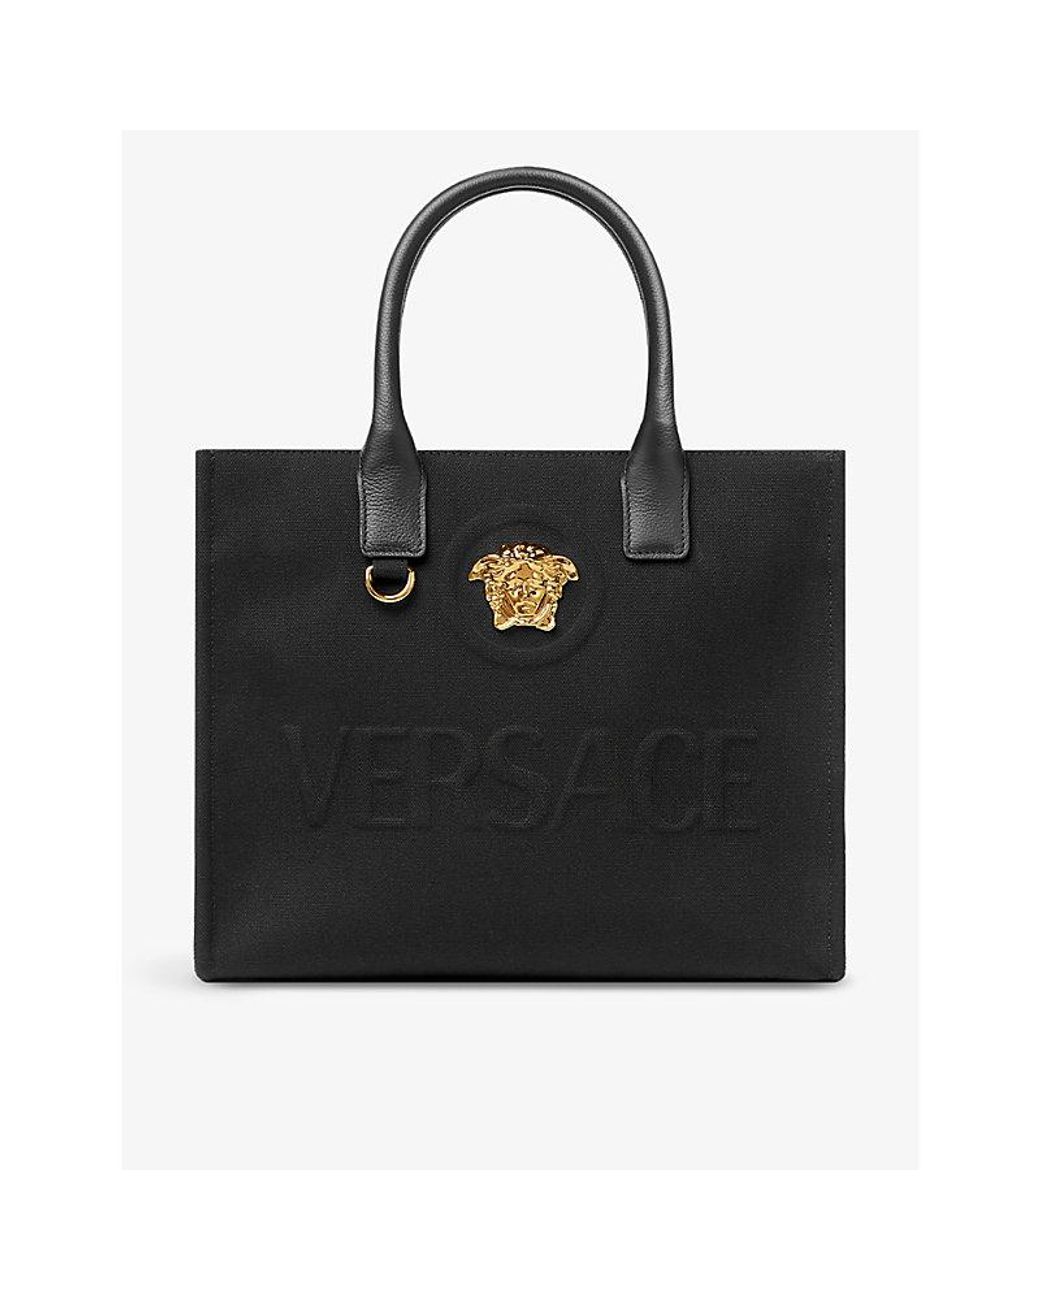 La Medusa Small Leather Tote Bag in Black - Versace